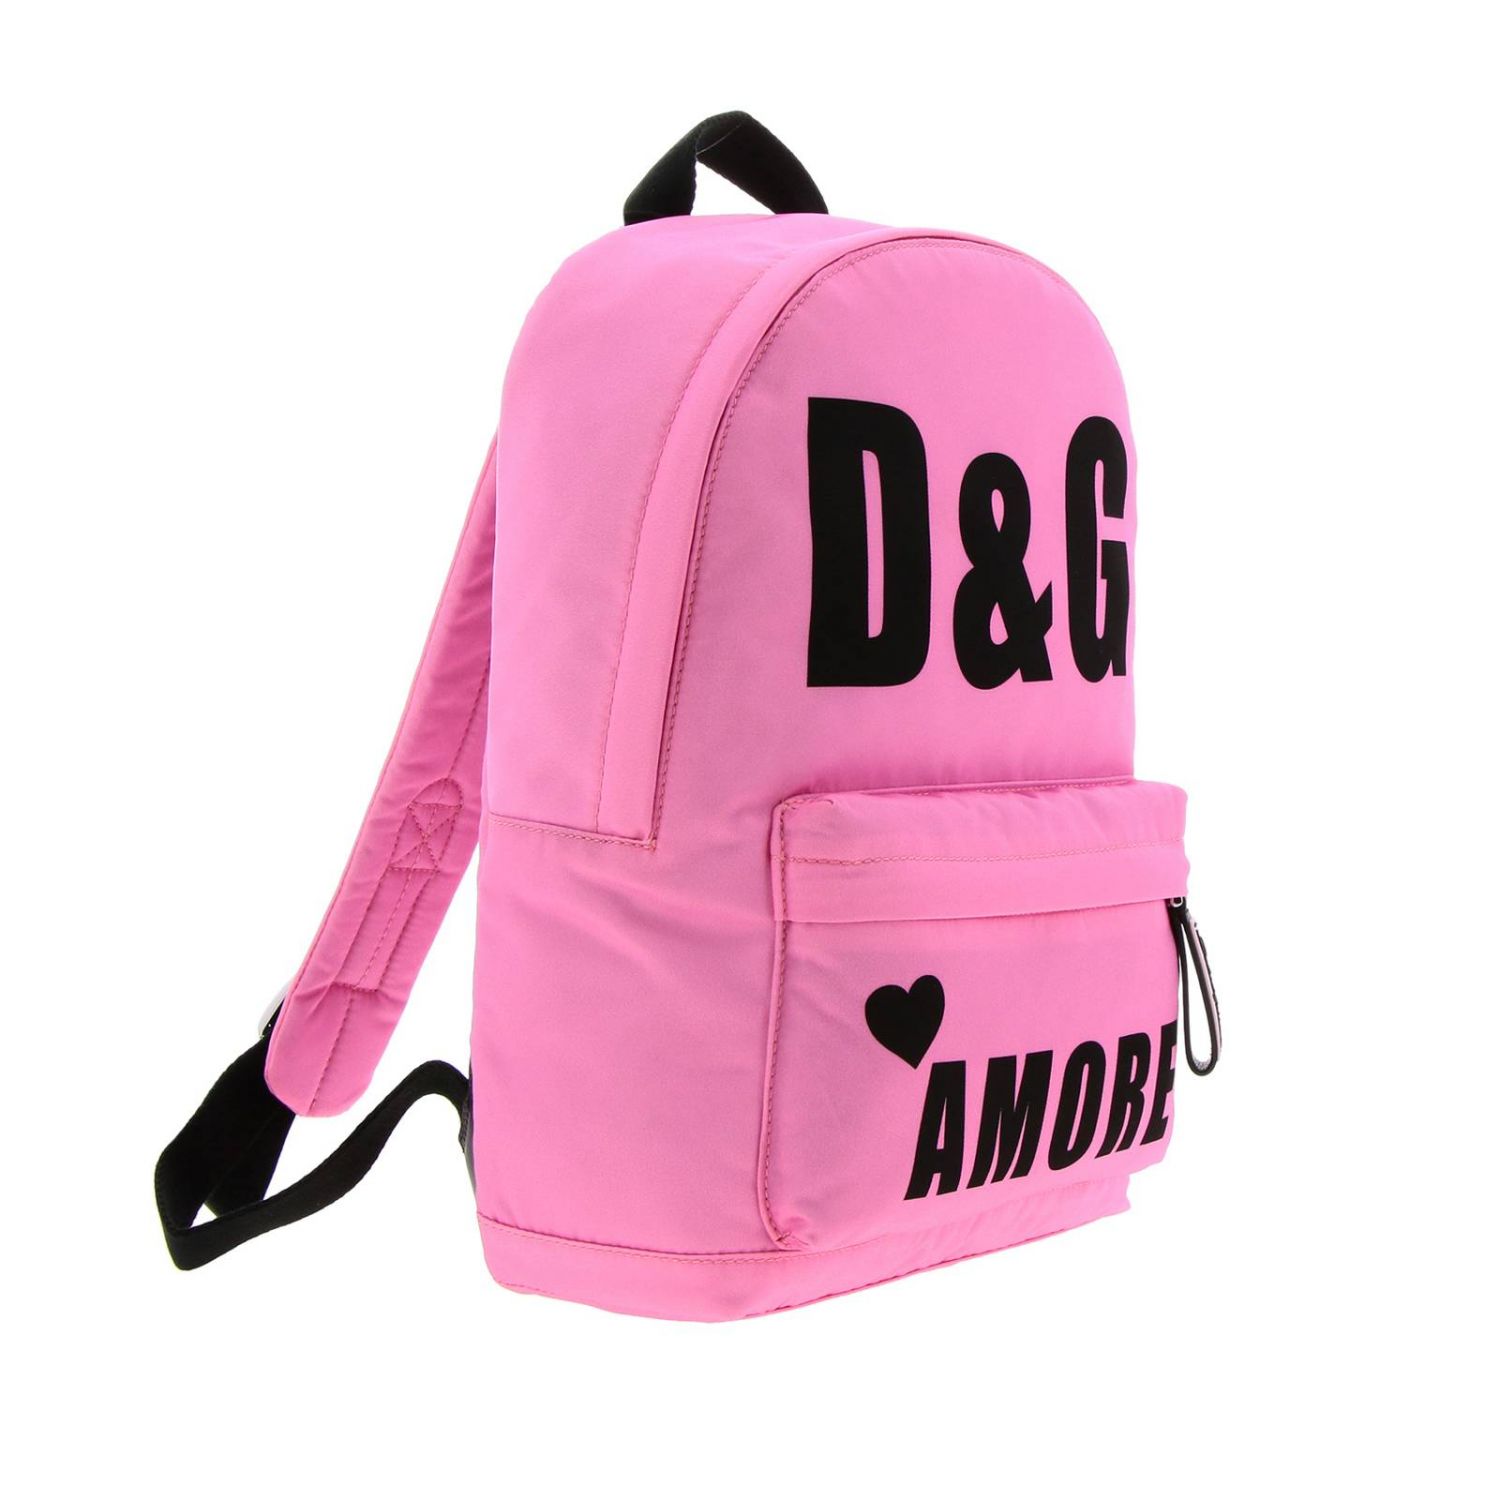 Dolce & Gabbana Outlet: Bag kids | Bag Dolce & Gabbana Kids Pink | Bag ...